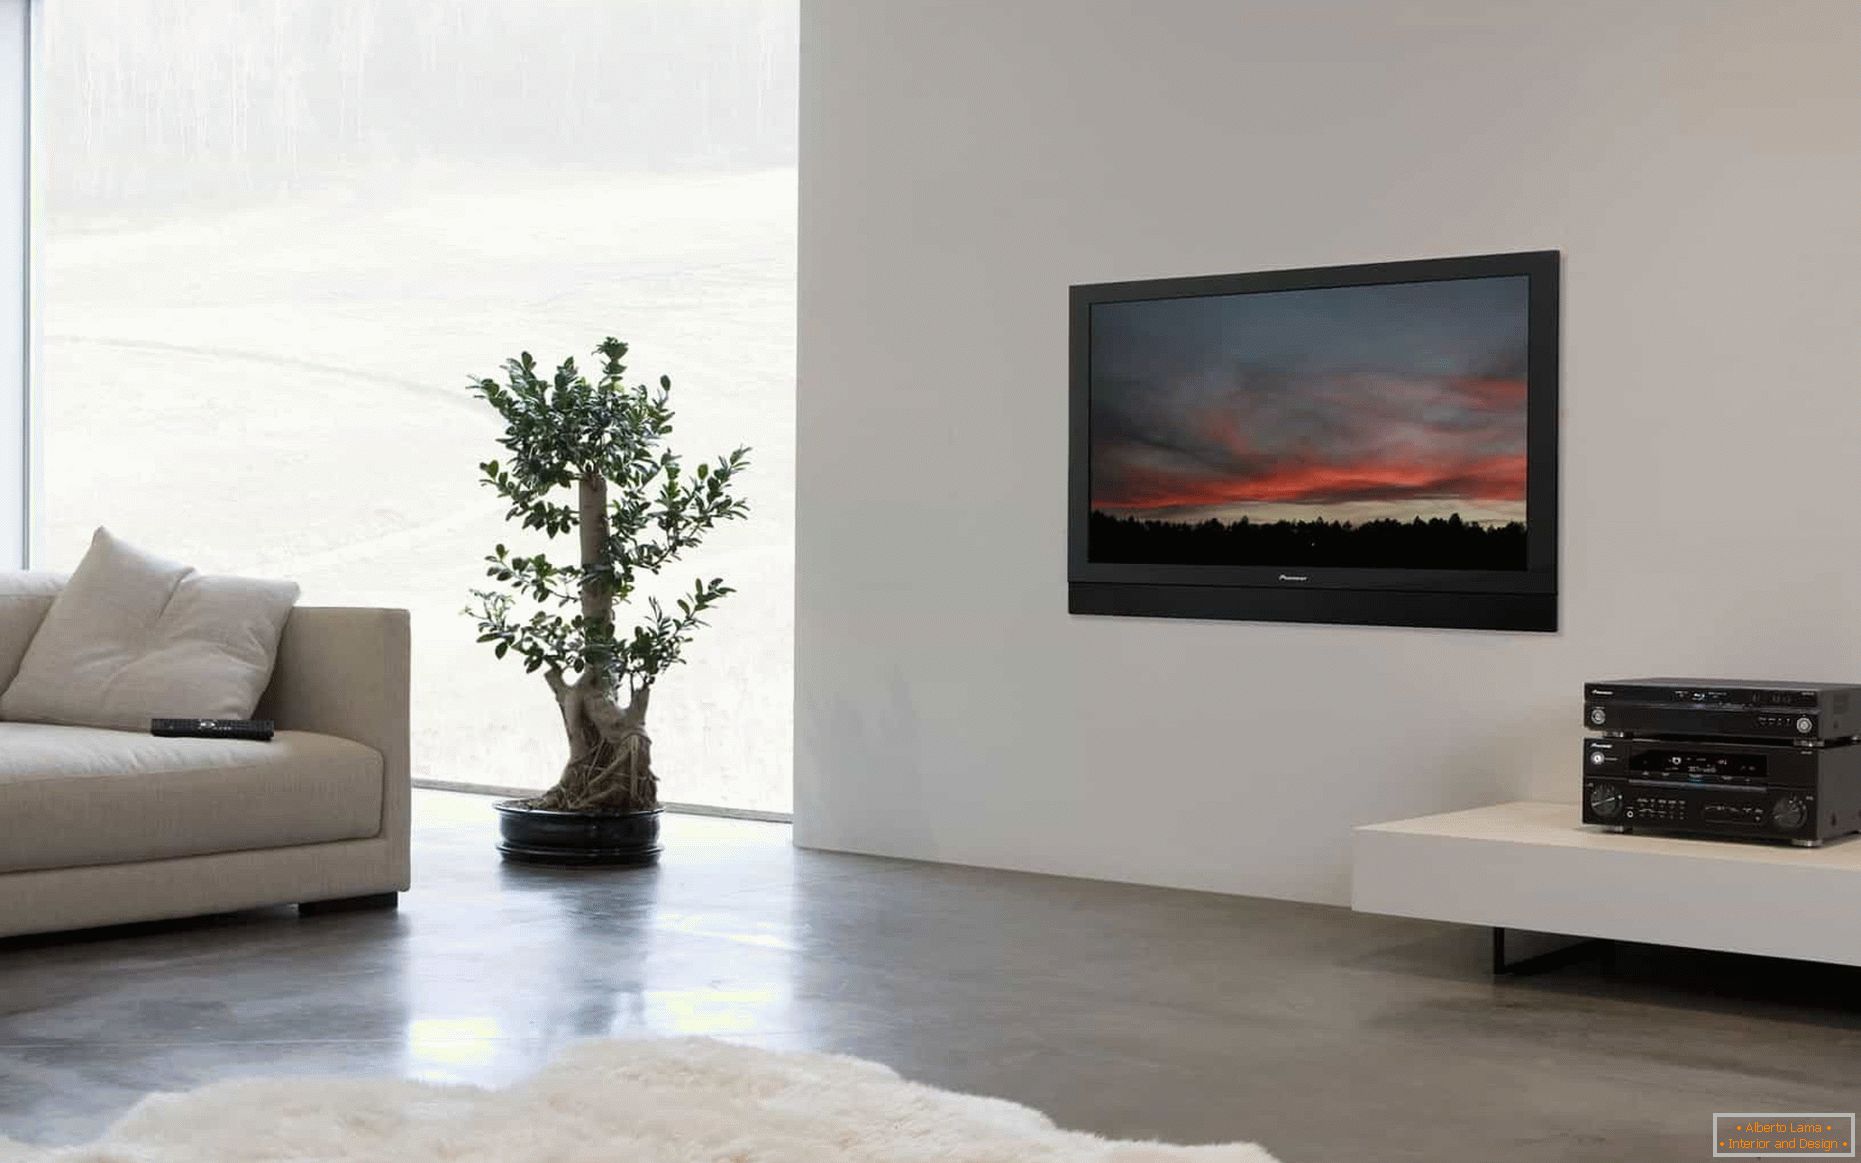 Fernsehapparat auf der weißen Wand im Wohnzimmer